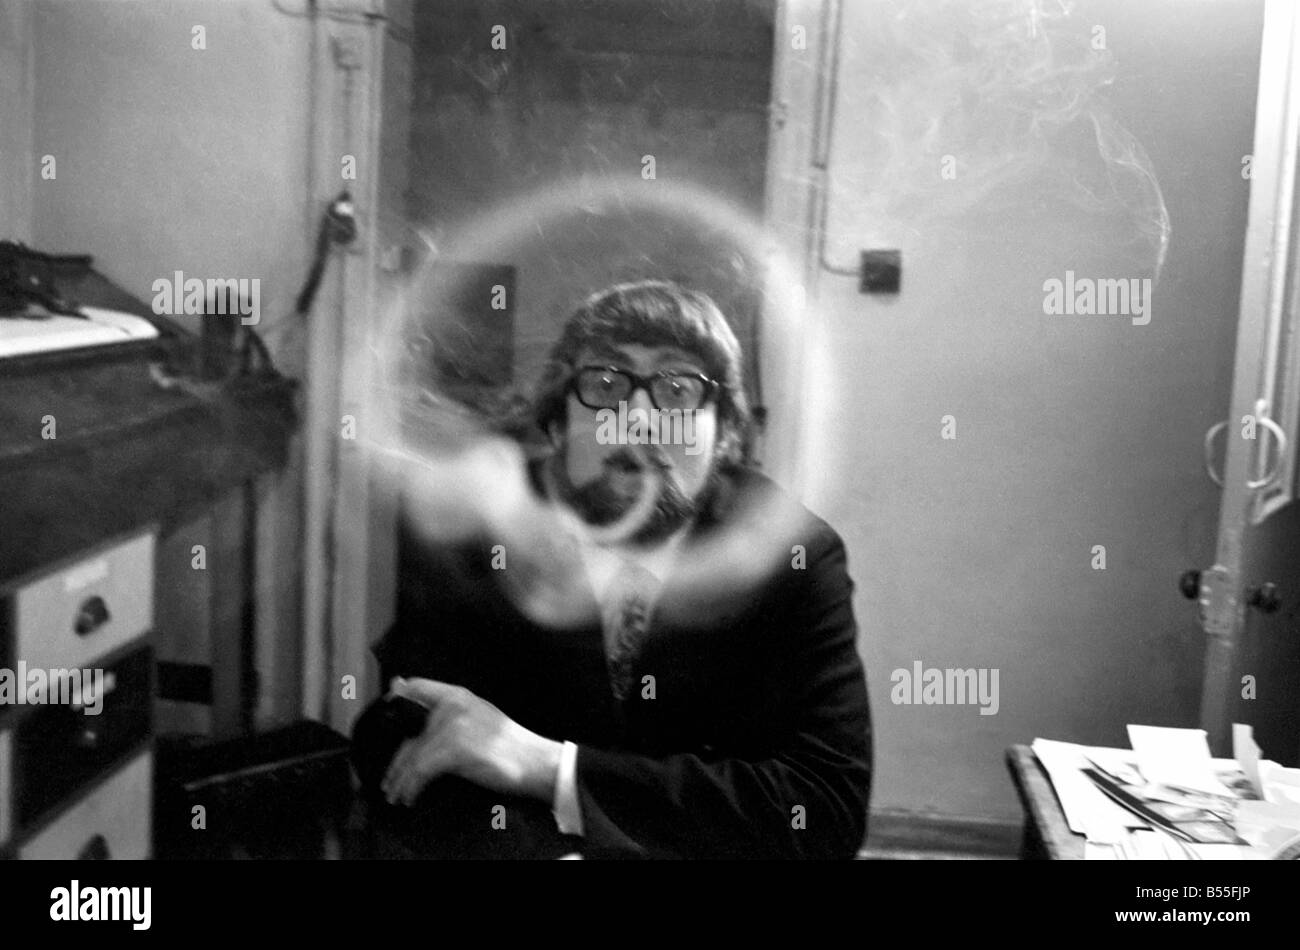 Un homme fume une cigarette soufflant des ronds de fumée. Novembre 1969 &# 13 ;&# 10;Z43007 Banque D'Images